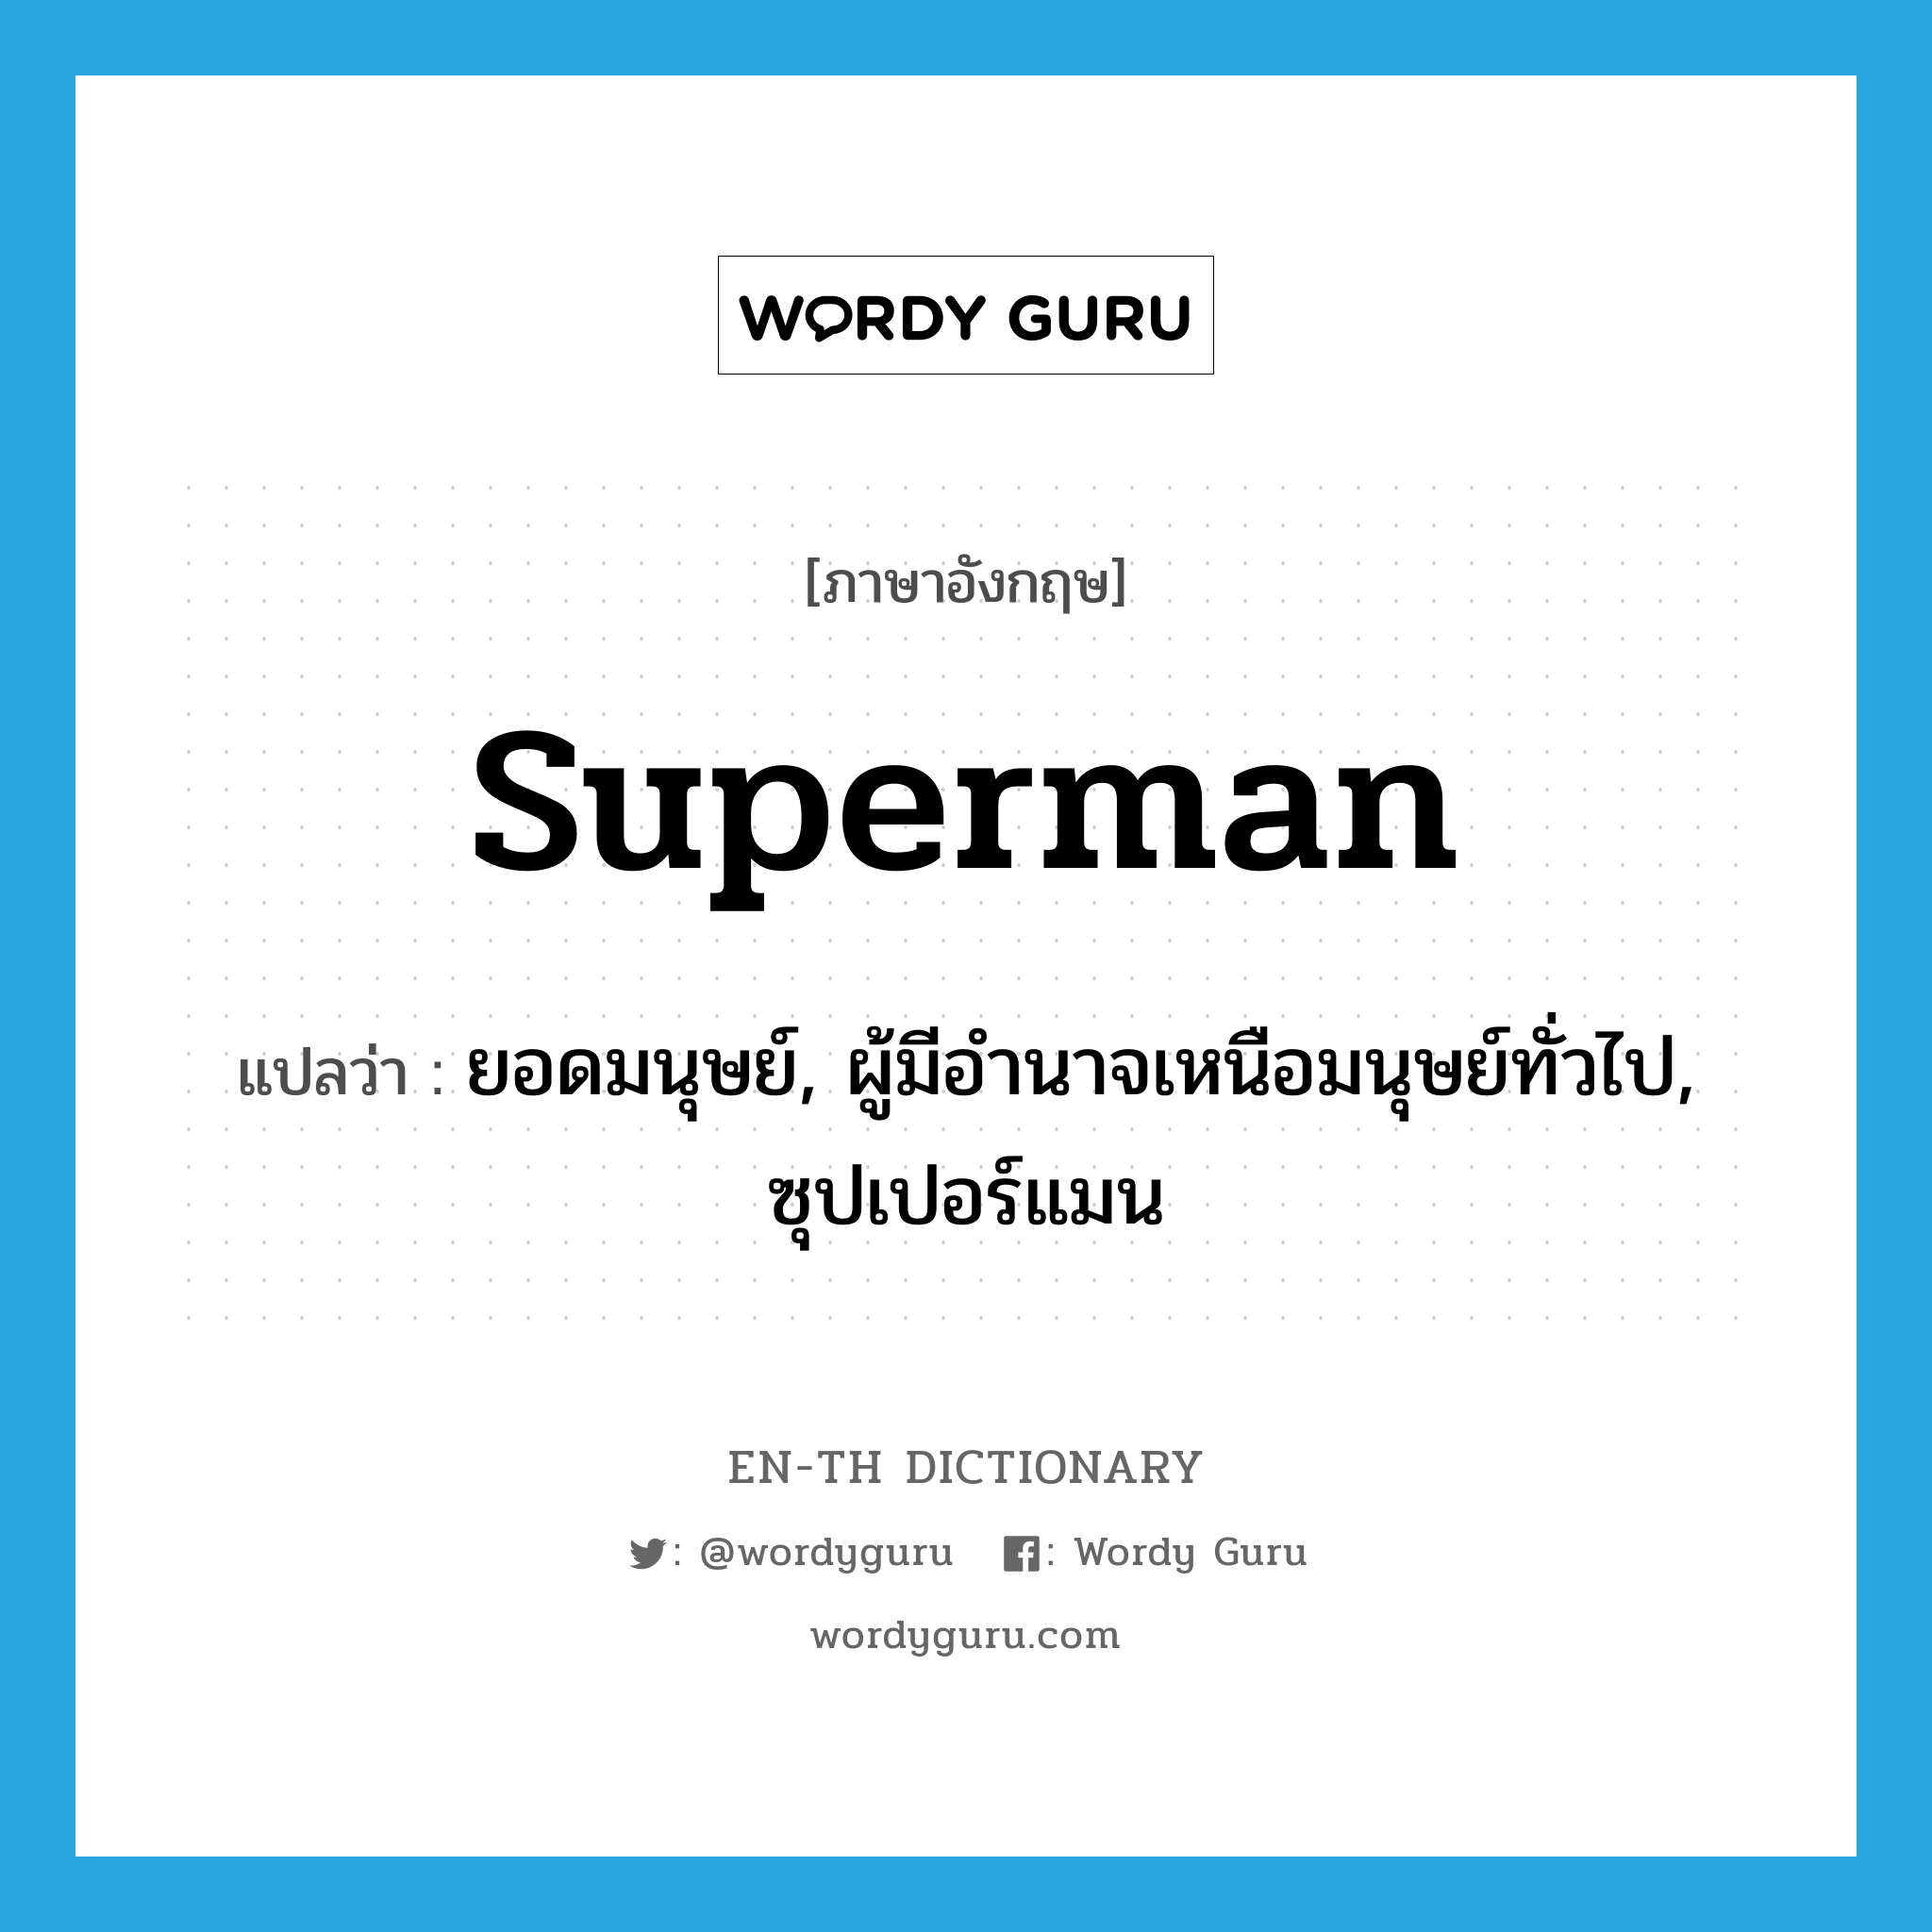 superman แปลว่า?, คำศัพท์ภาษาอังกฤษ superman แปลว่า ยอดมนุษย์, ผู้มีอำนาจเหนือมนุษย์ทั่วไป, ซุปเปอร์แมน ประเภท N หมวด N